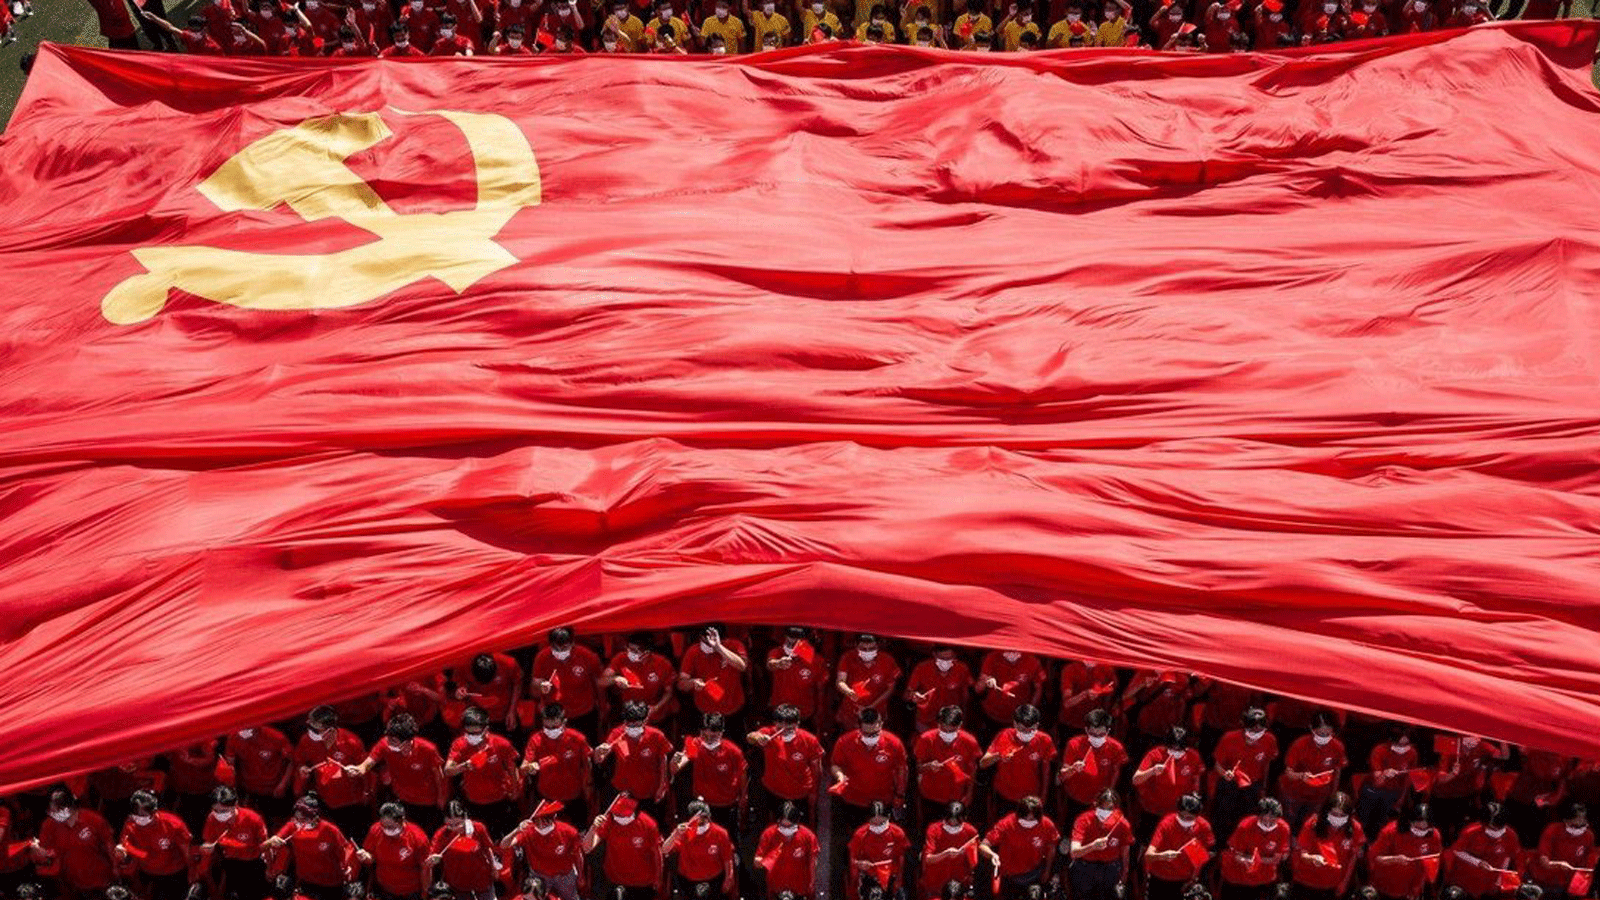 طلاب جامعيون في ووهان يرفعون علم الحزب الشيوعي الصيني بمناسبة الذكرى المئوية لتأسيسه.